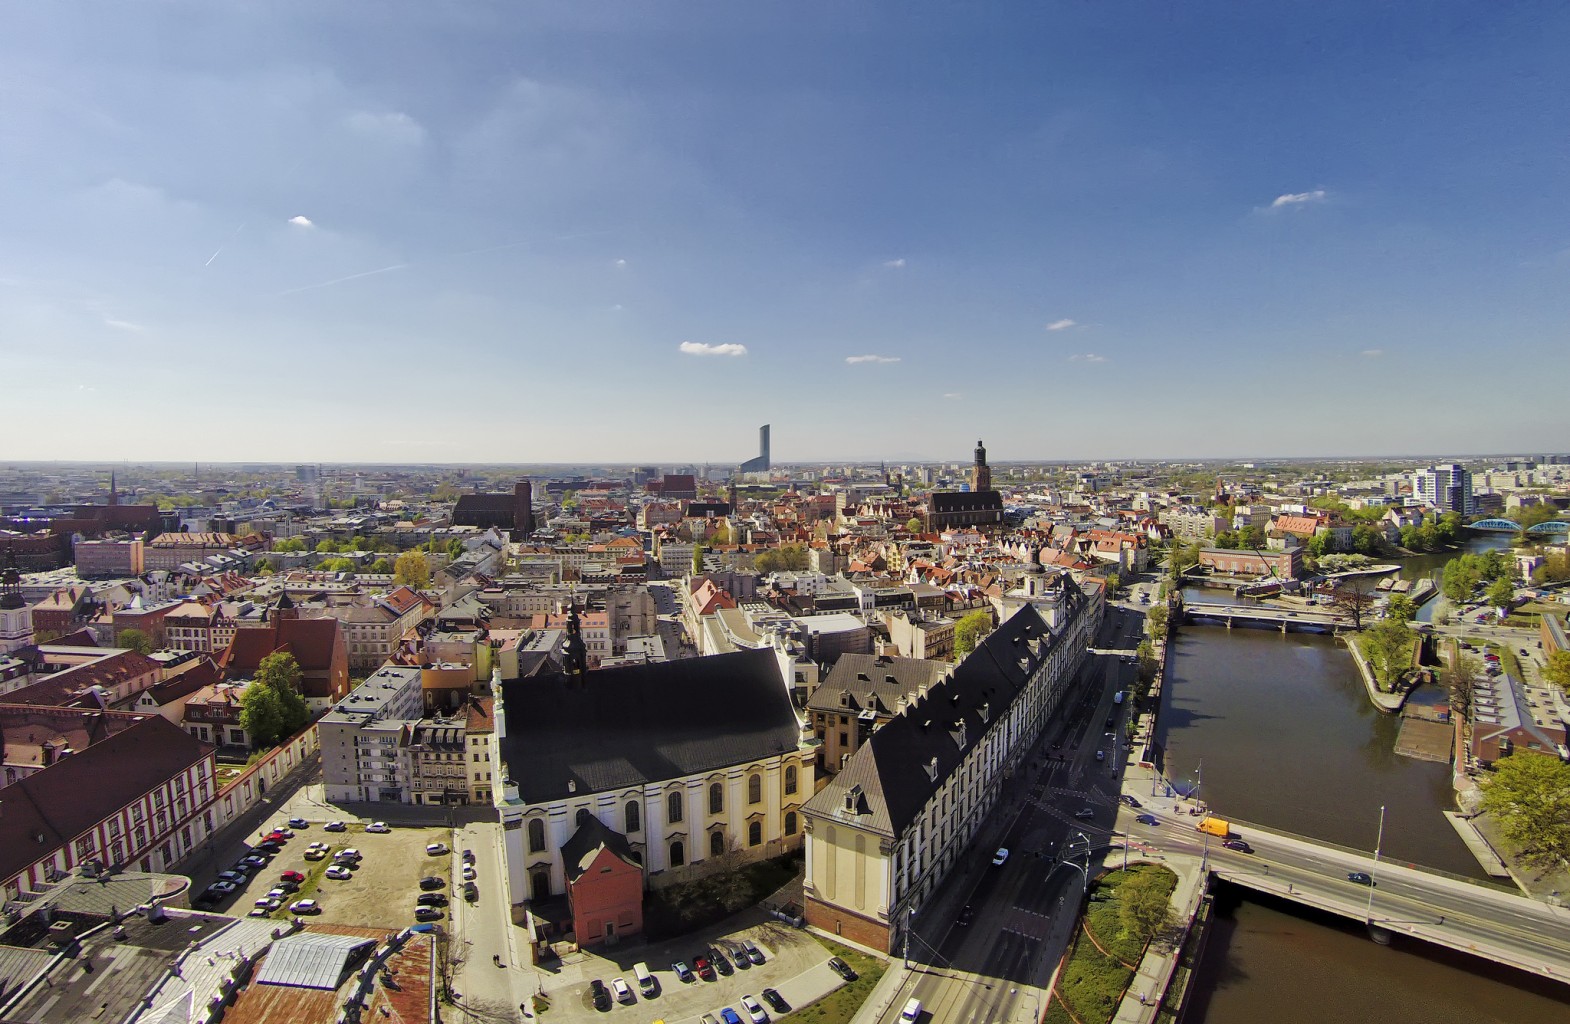 ורוצלב - העיר הפופולרית שזכתה לכינוי "ונציה של פולין"